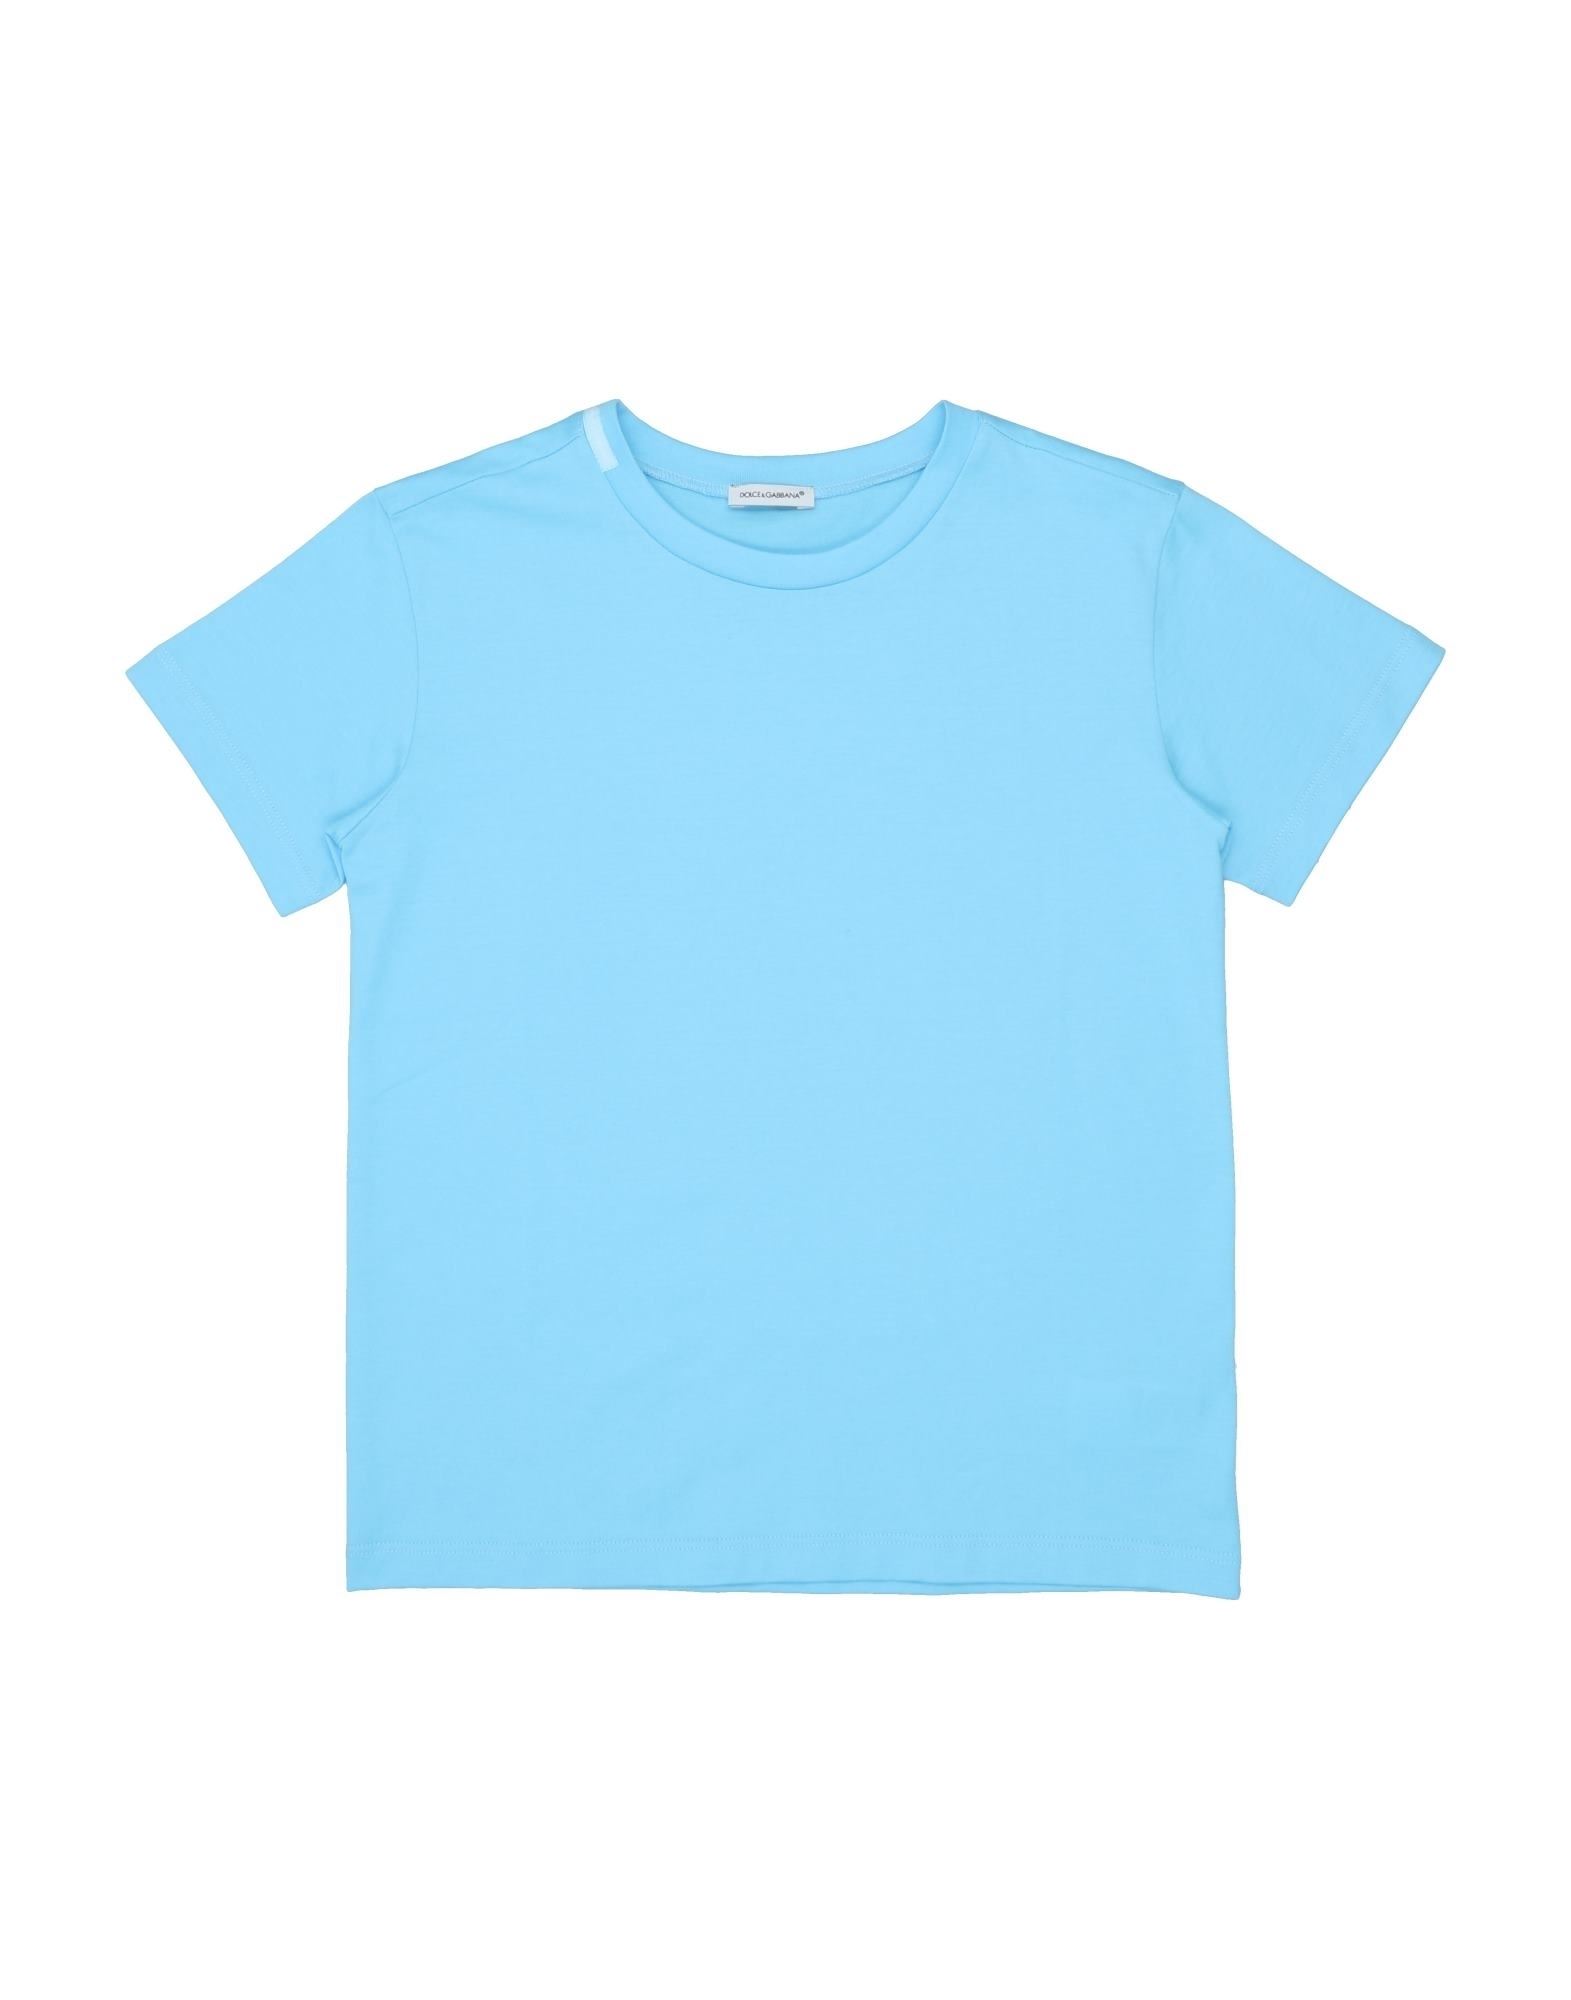 Dolce & Gabbana Kids' T-shirts In Sky Blue